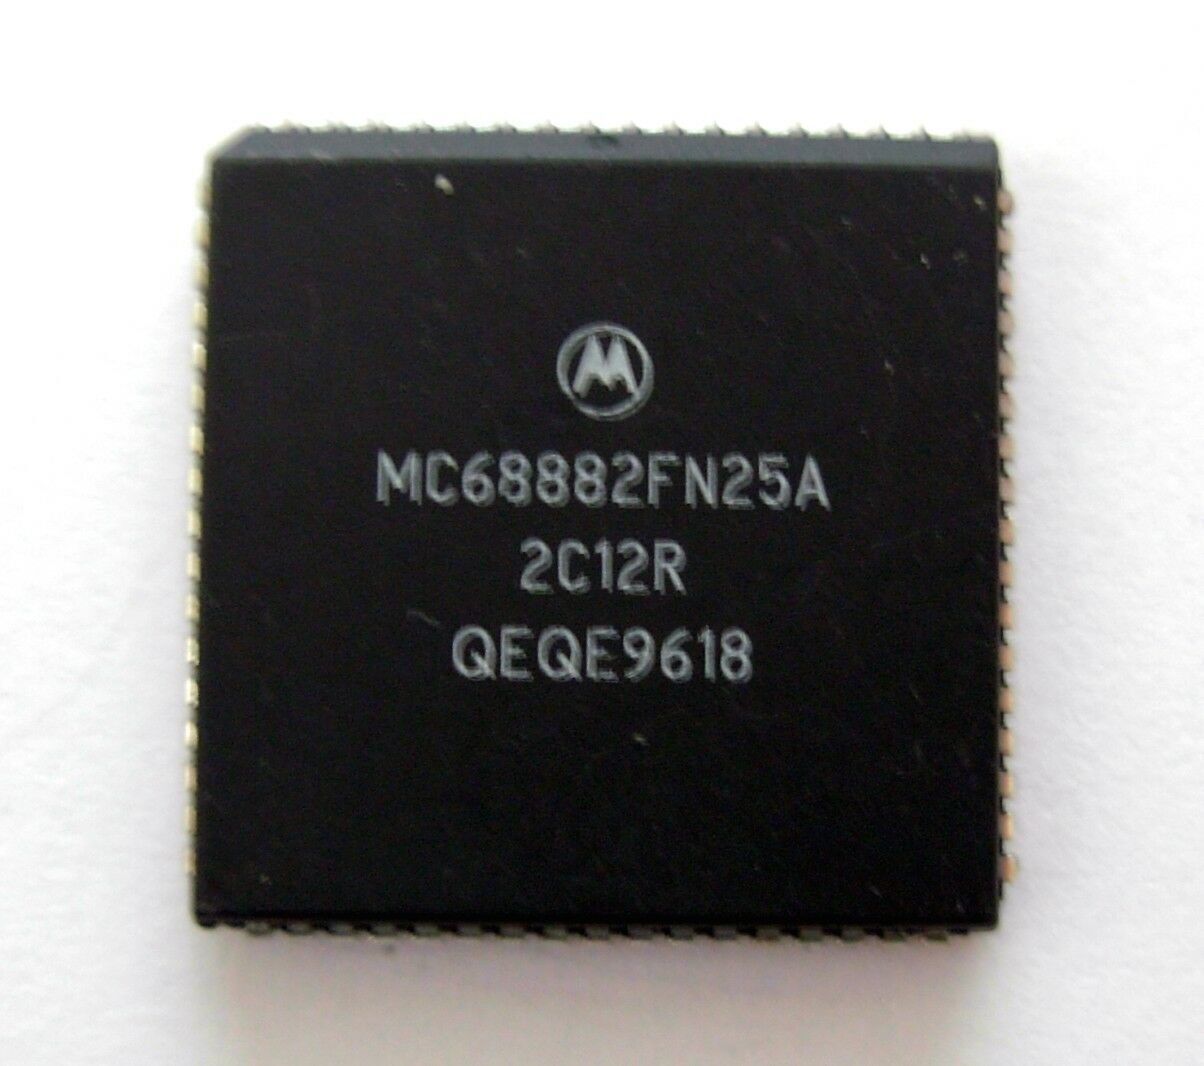 Motorola 68882 | Apple Wiki | Fandom